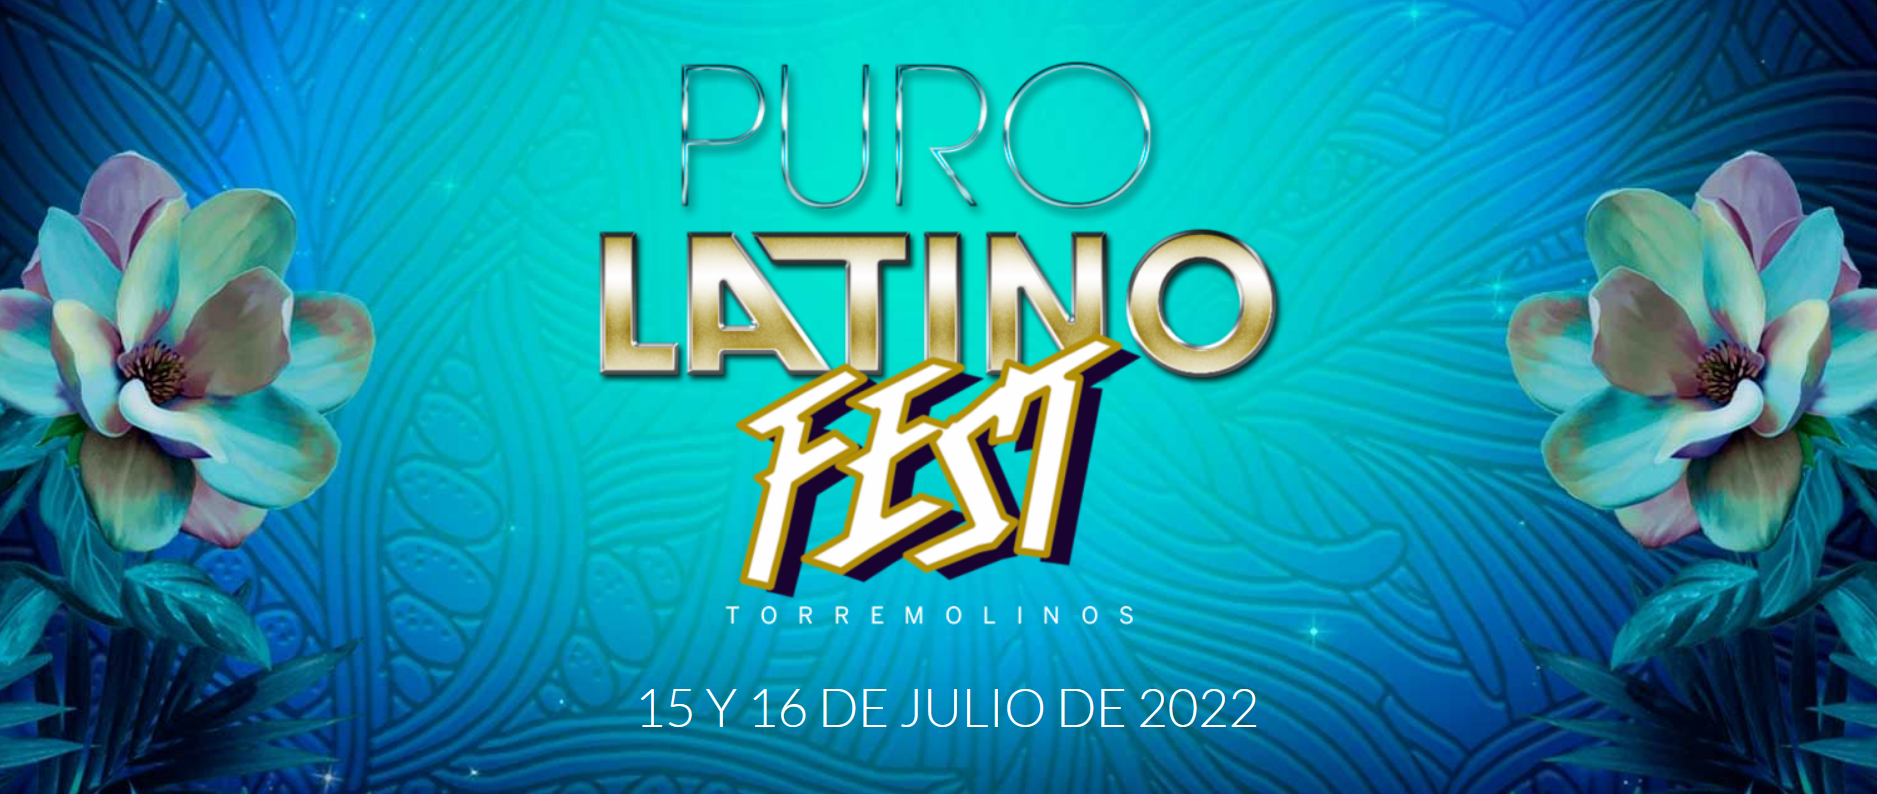 Puro Latino Fest - Torremolinos